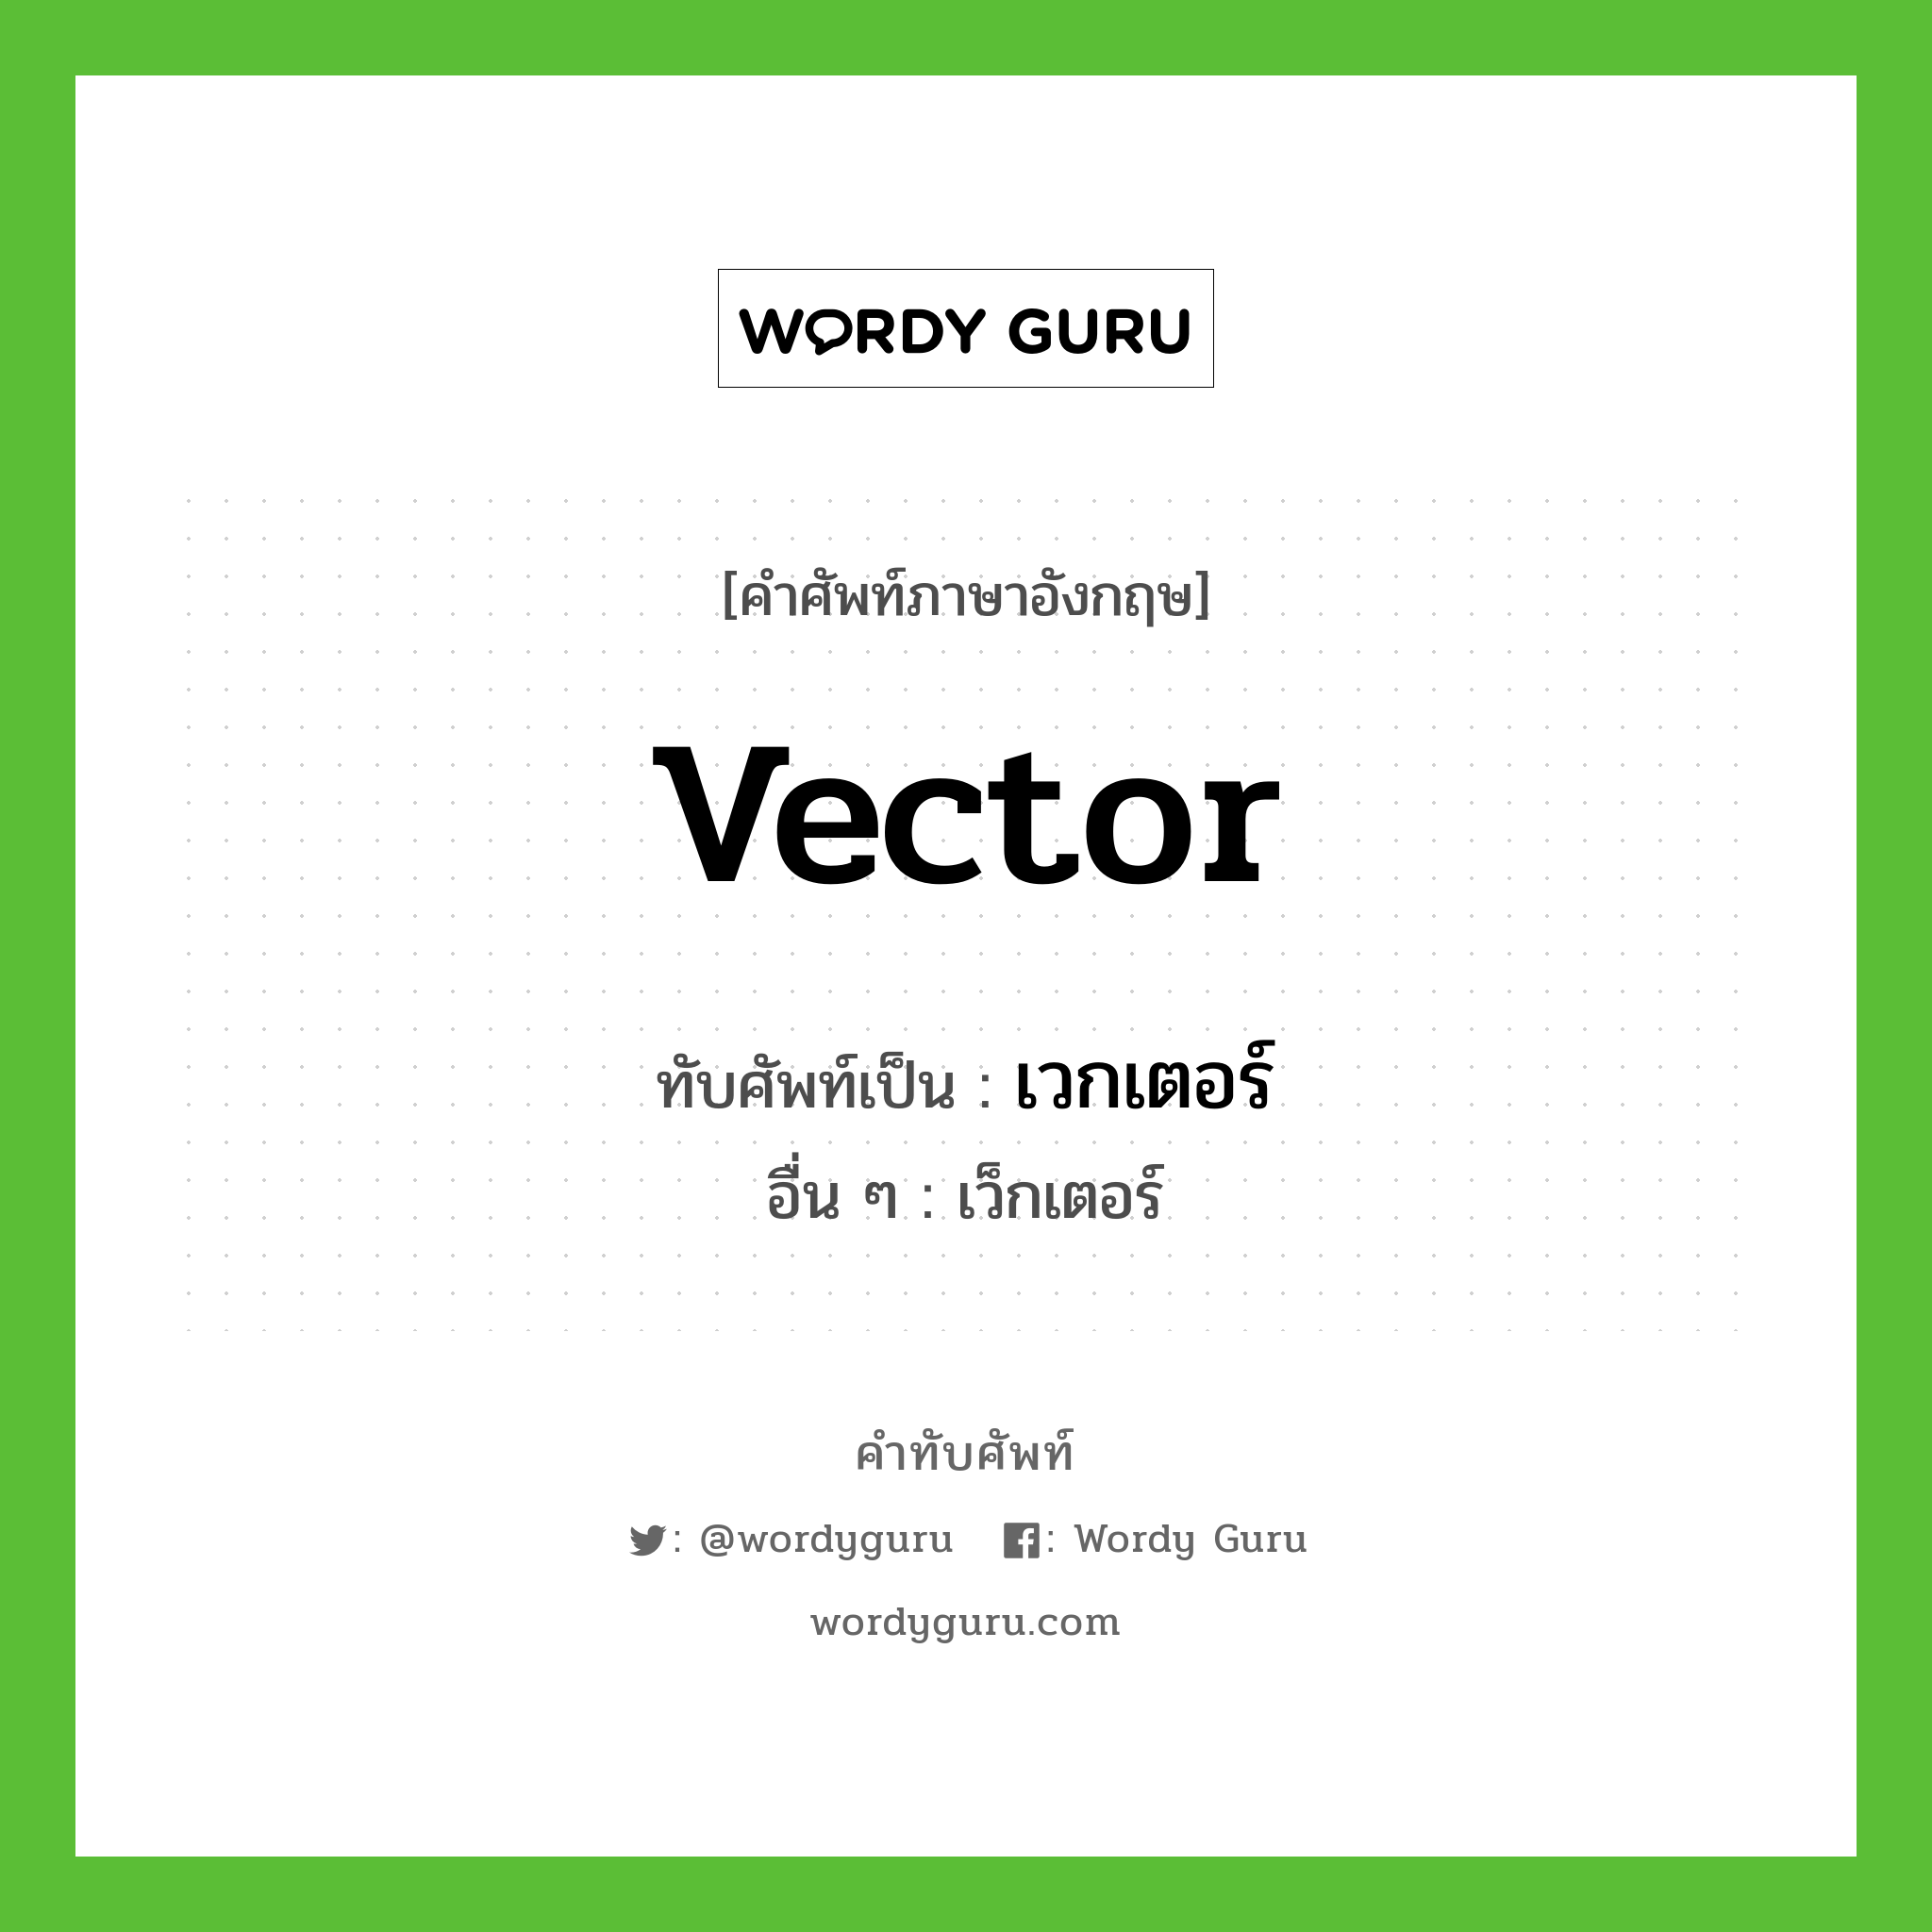 vector เขียนเป็นคำไทยว่าอะไร?, คำศัพท์ภาษาอังกฤษ vector ทับศัพท์เป็น เวกเตอร์ อื่น ๆ เว็กเตอร์